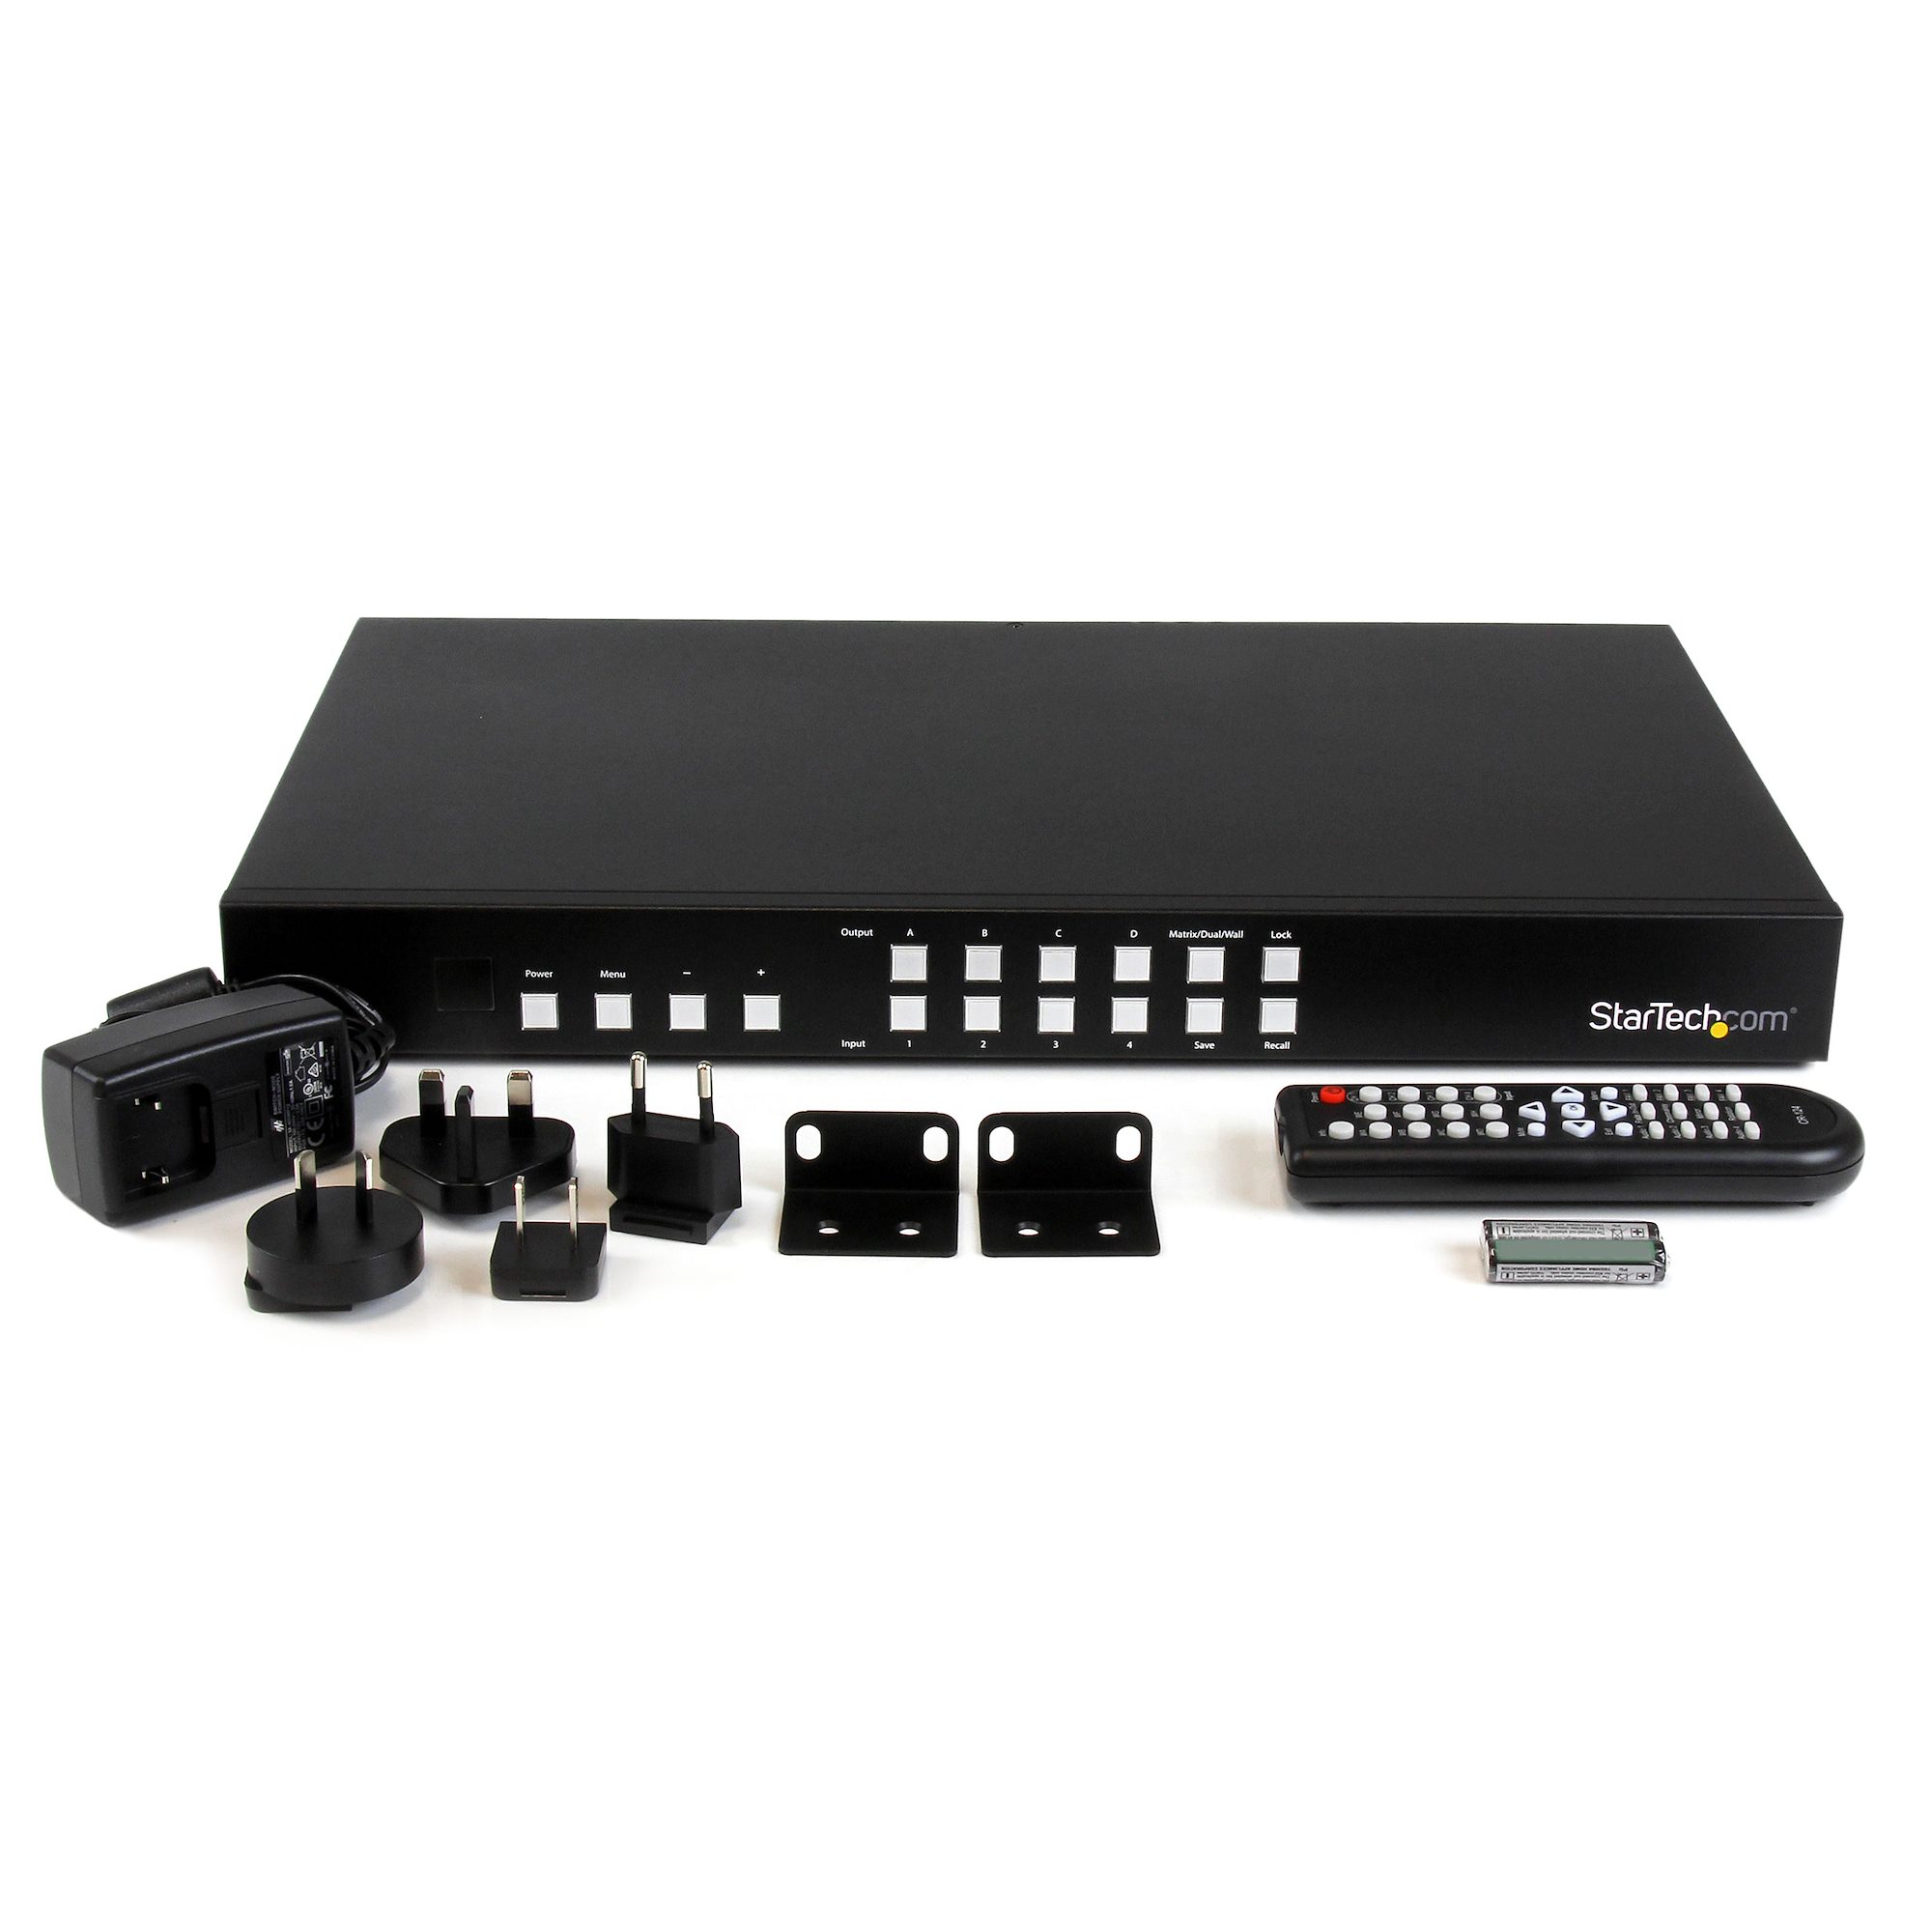 ビデオスイッチャー/4入力4出力/4K60Hz HDMI/オーディオイーサネット制御/4x4 HDMI分配器 ハブ セレクター  スプリッター/HDMI マトリッ